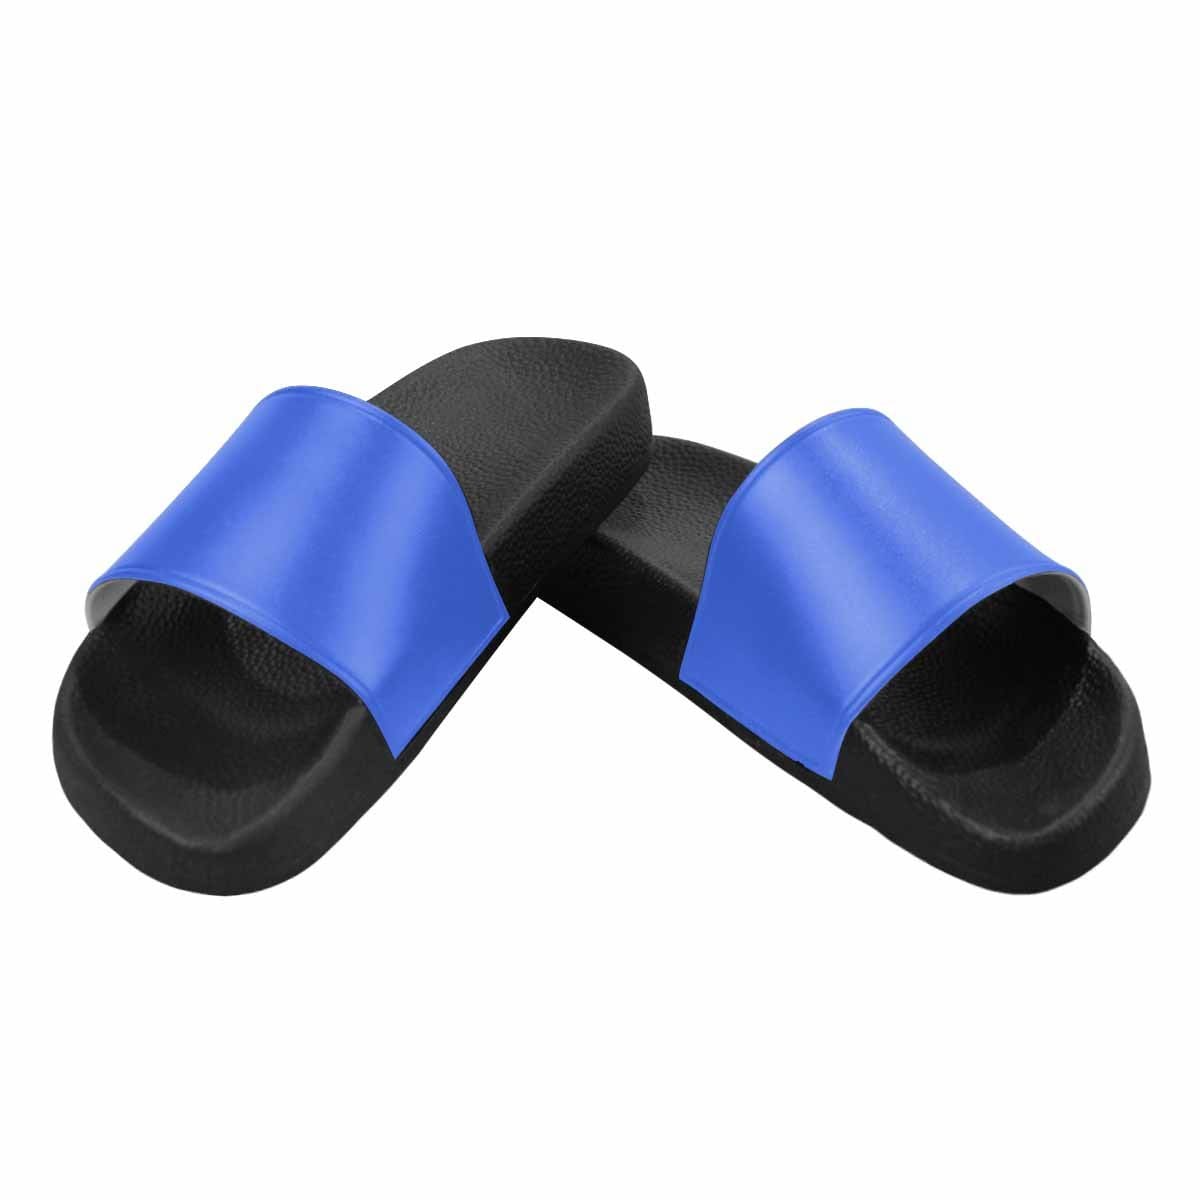 Mens Slide Sandals Royal Blue Flip Flops - Mens | Slides